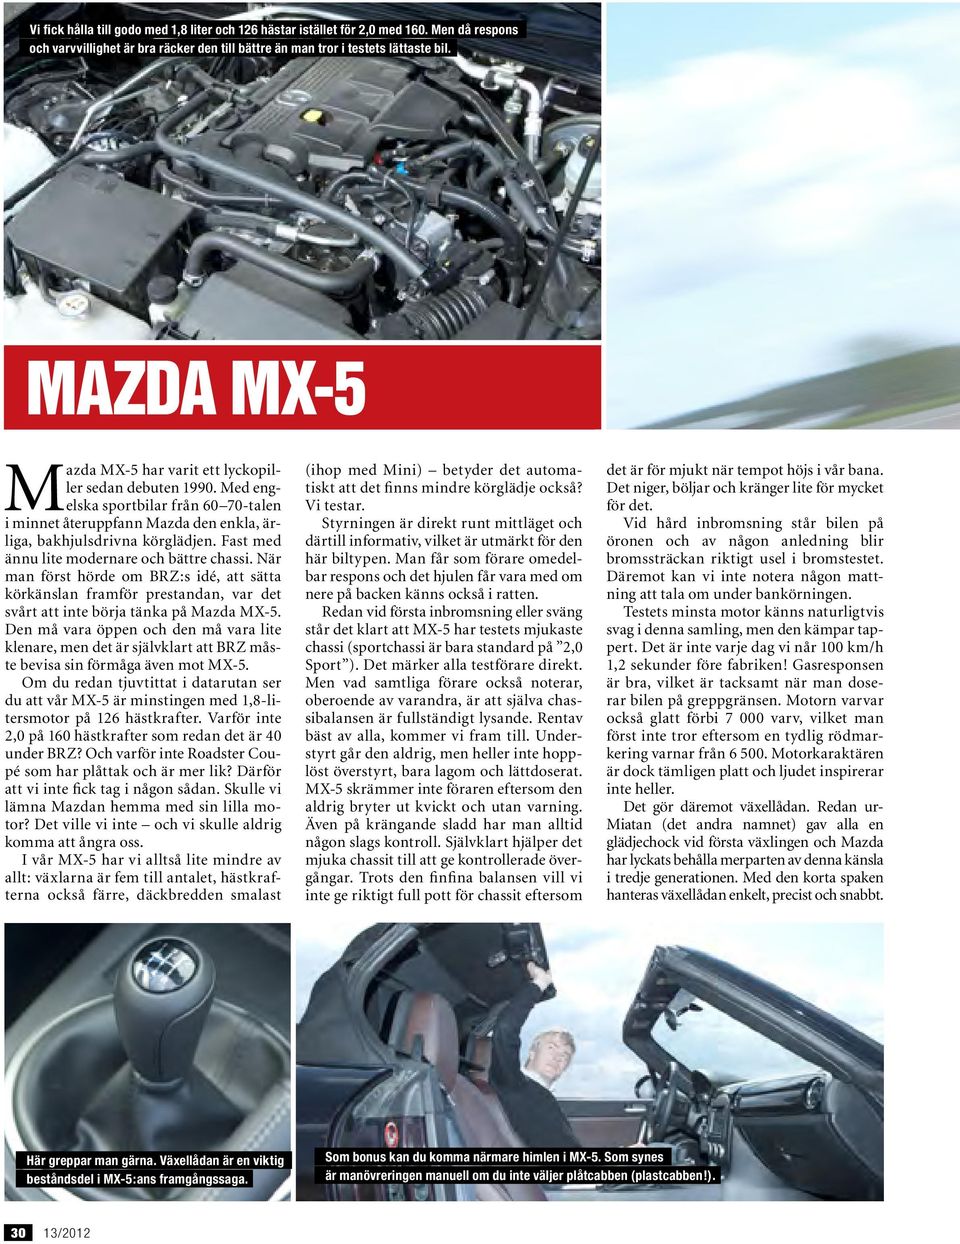 Fast med ännu lite modernare och bättre chassi. När man först hörde om BRZ:s idé, att sätta körkänslan framför prestandan, var det svårt att inte börja tänka på Mazda MX-5.